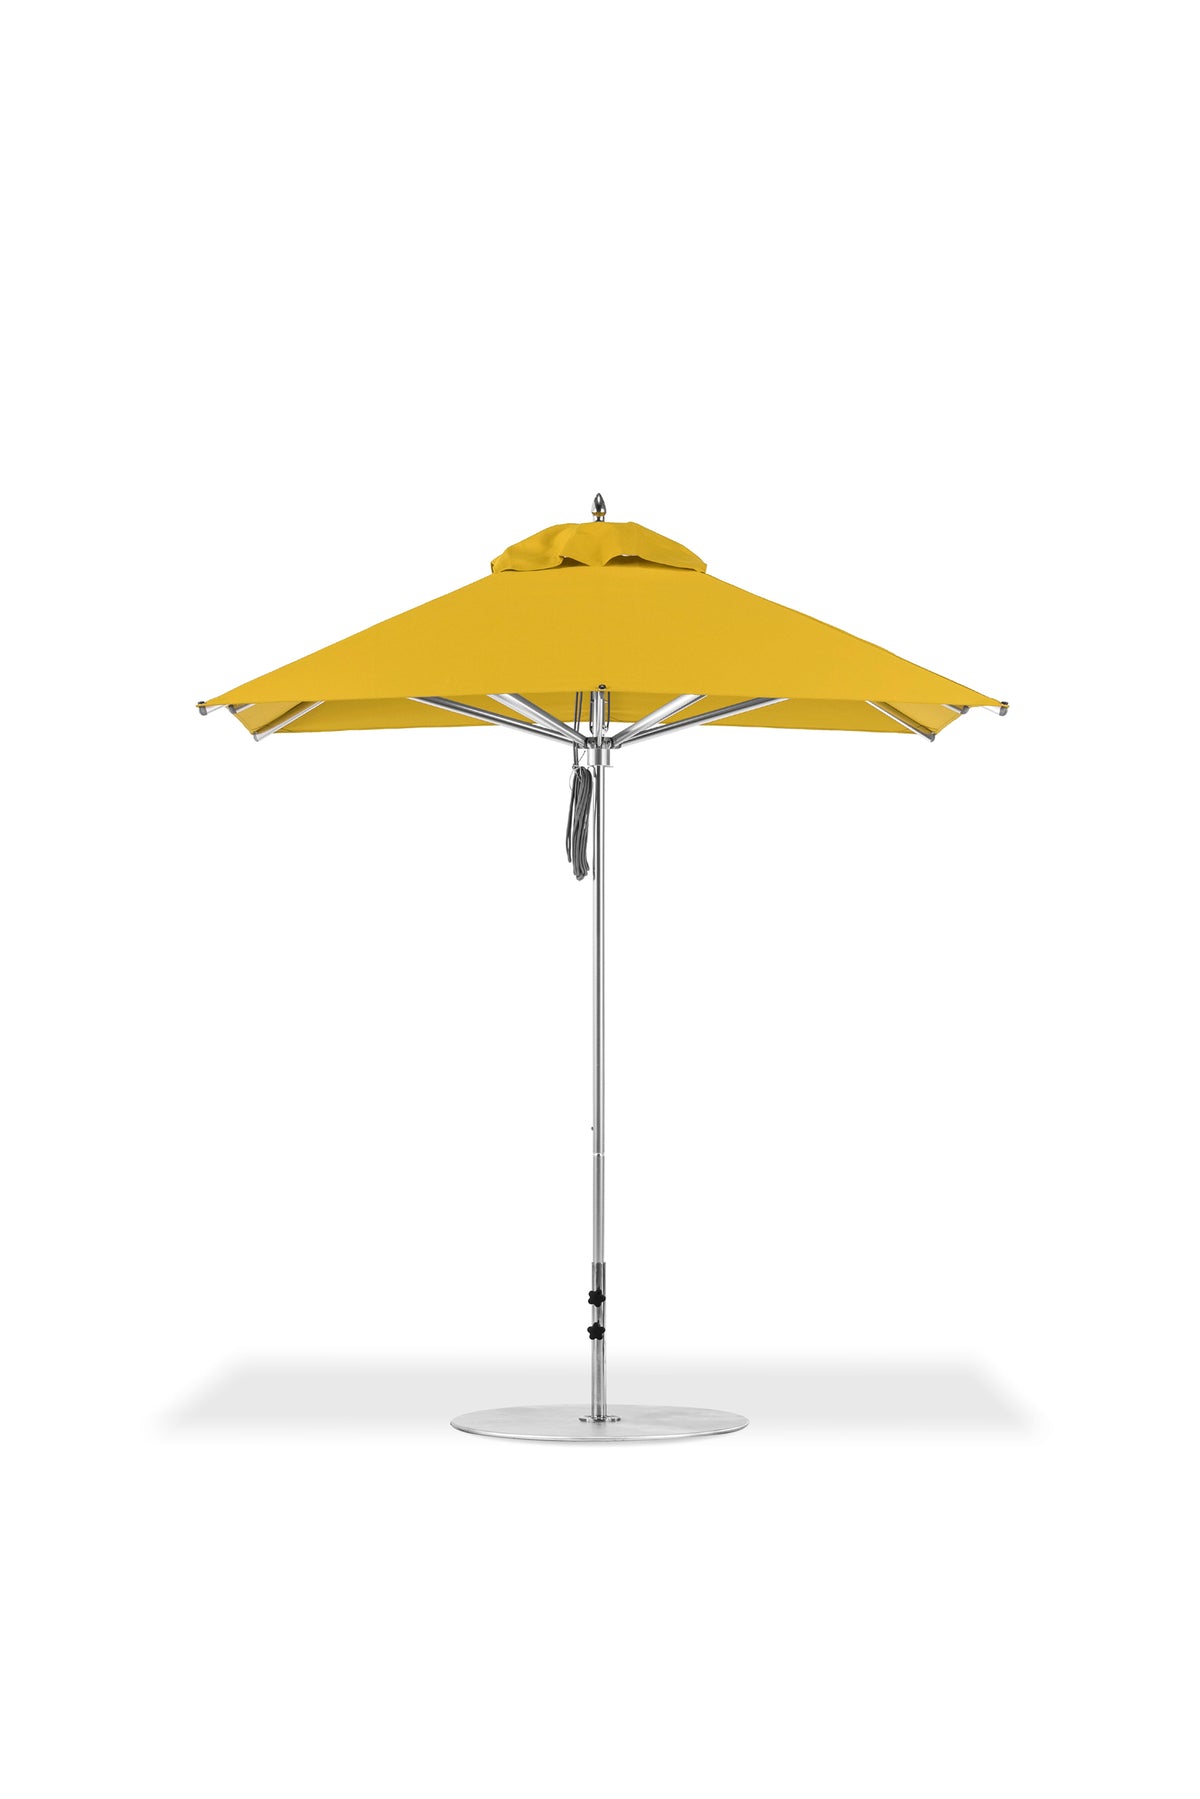 Frankford Greenwich Market Umbrella - Square